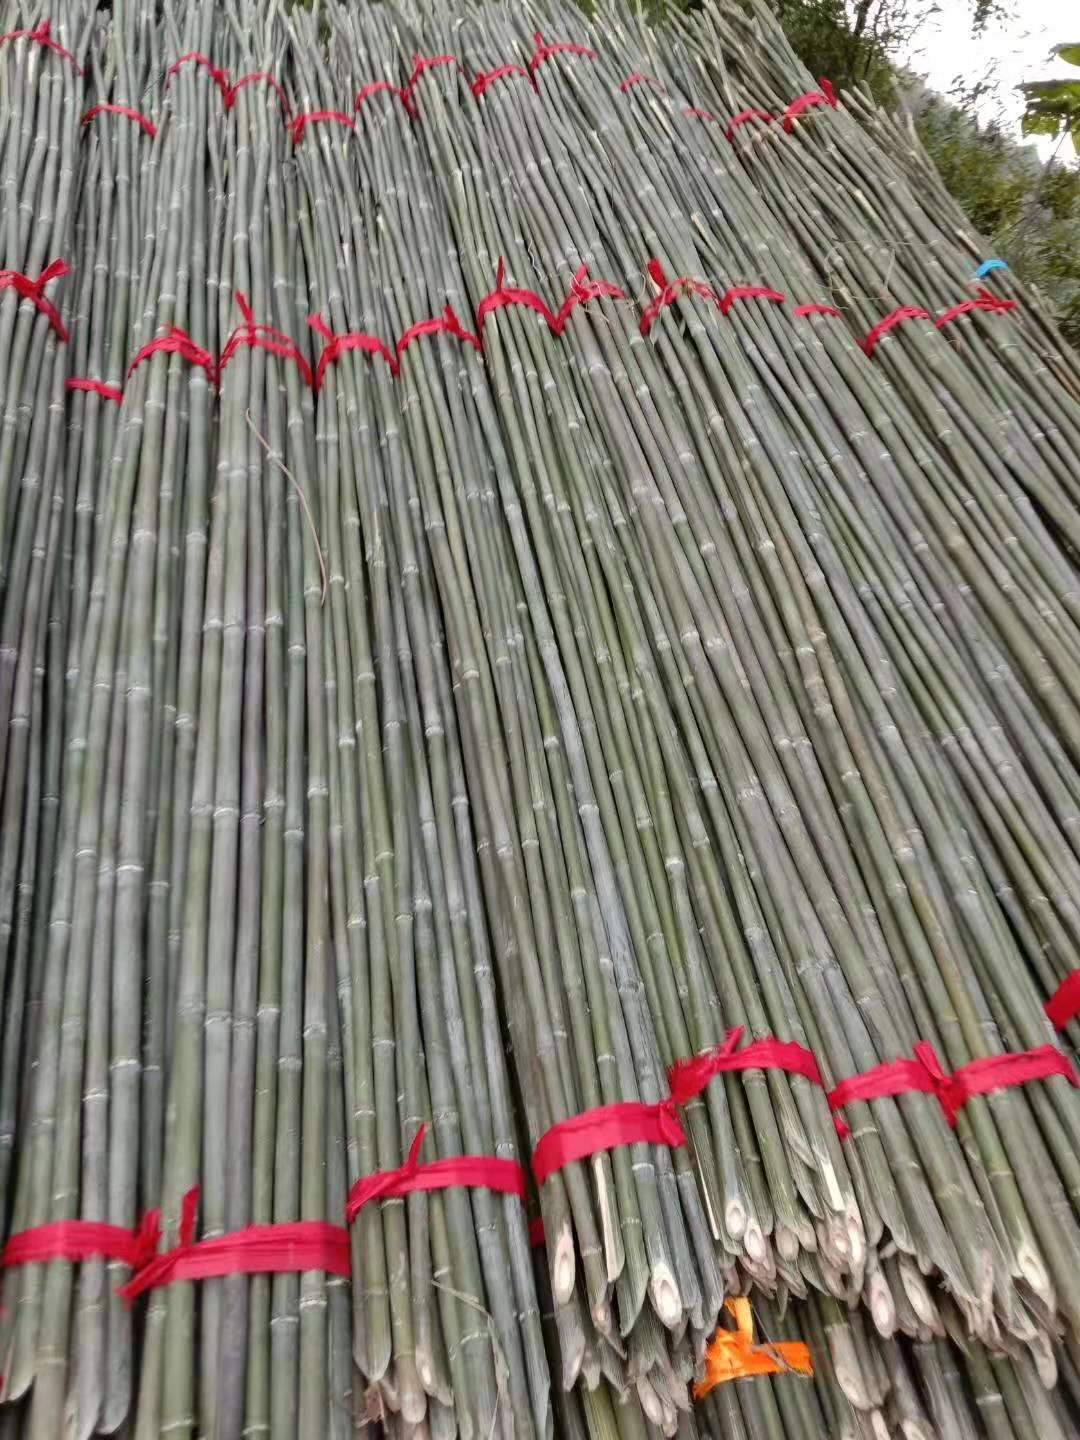 菜架竹价格 菜架竹子批发 大量批发2.7米长种菜用竹子 蔬菜爬藤搭架用竹子图片